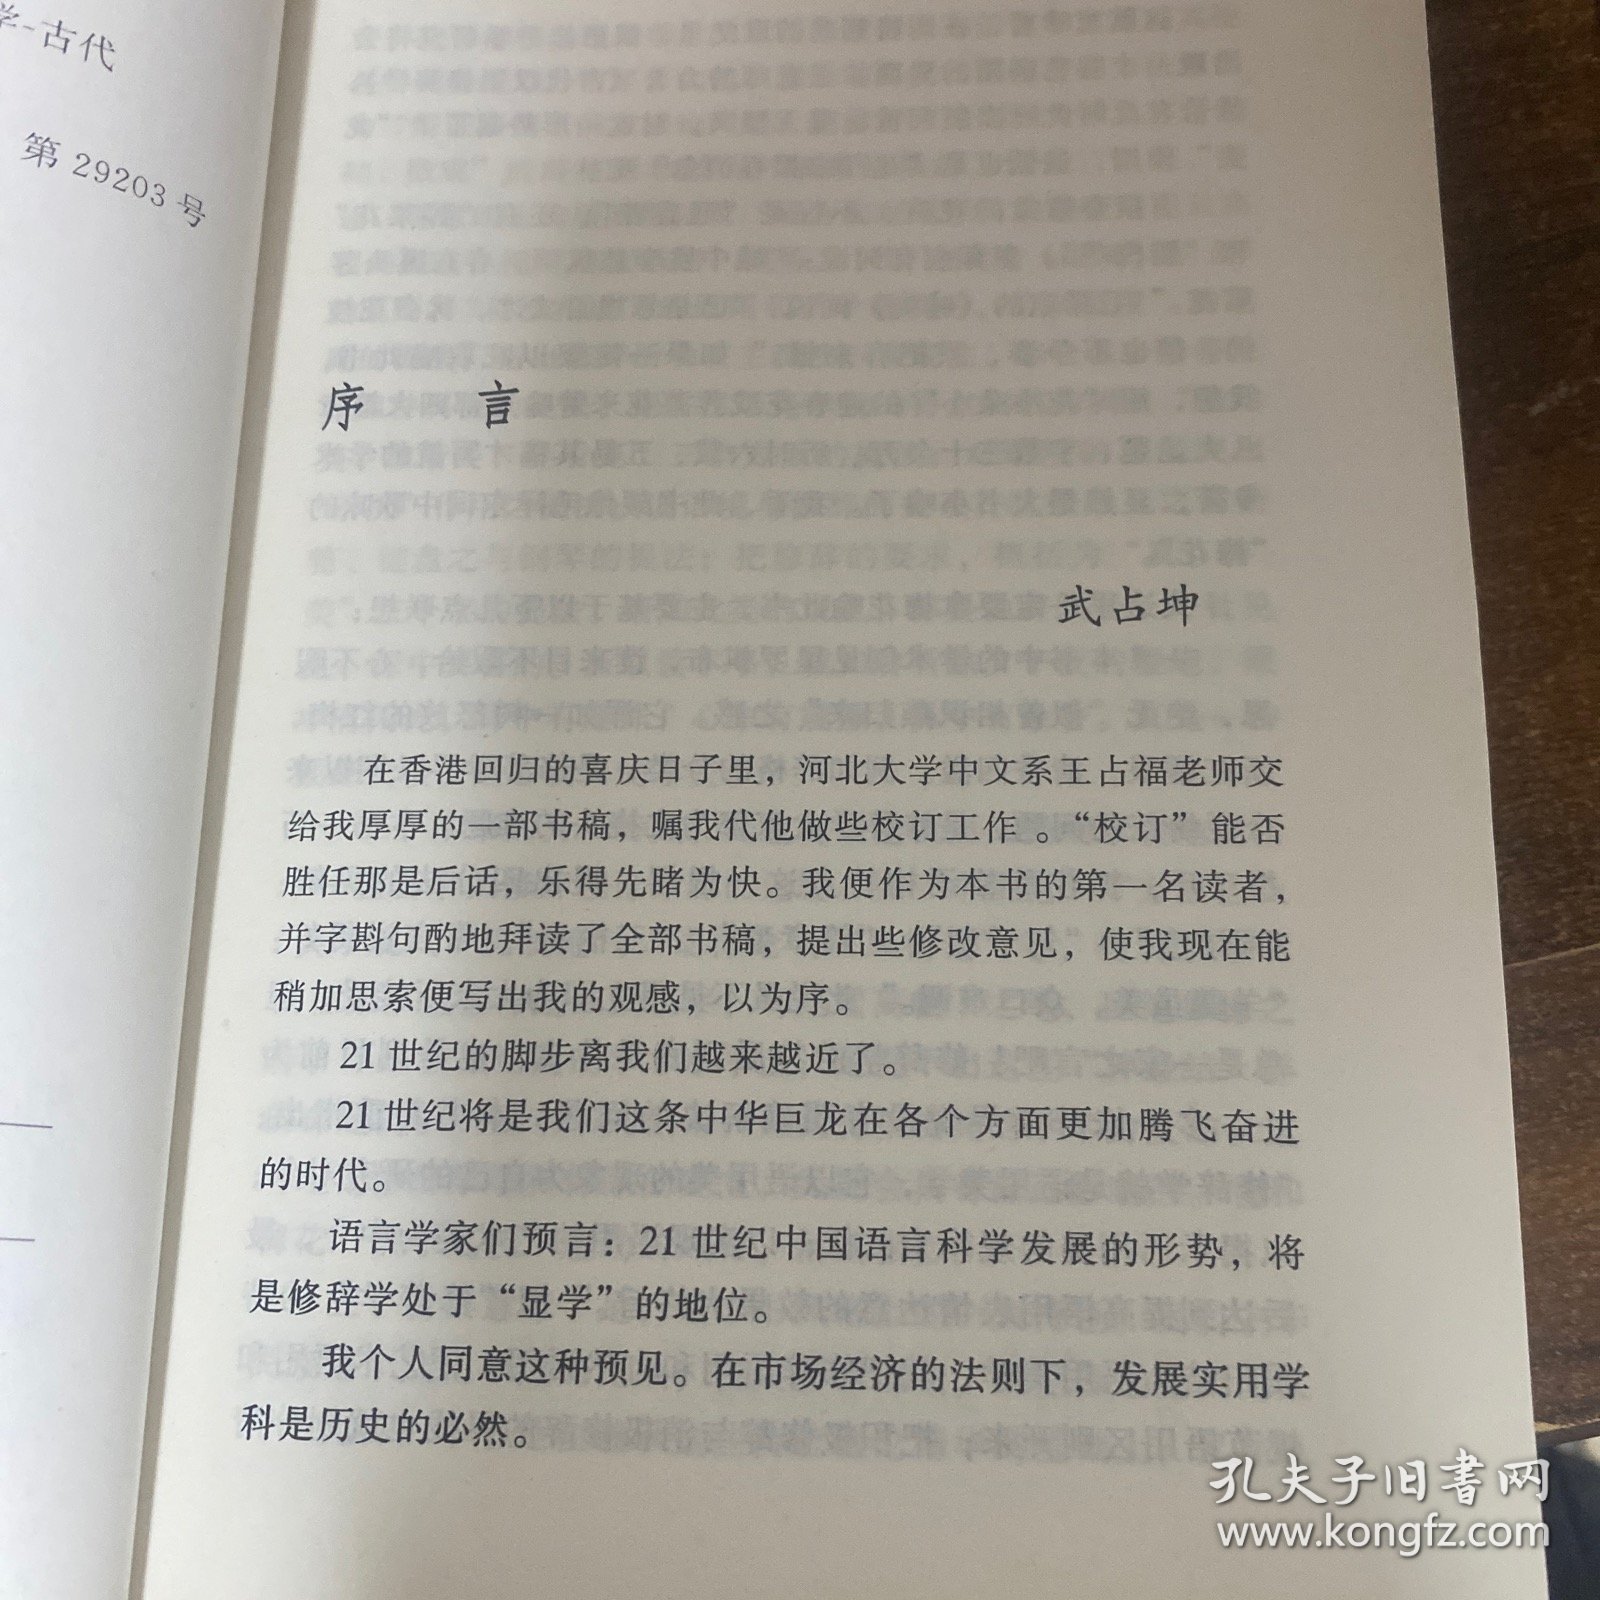 古代汉语修辞学